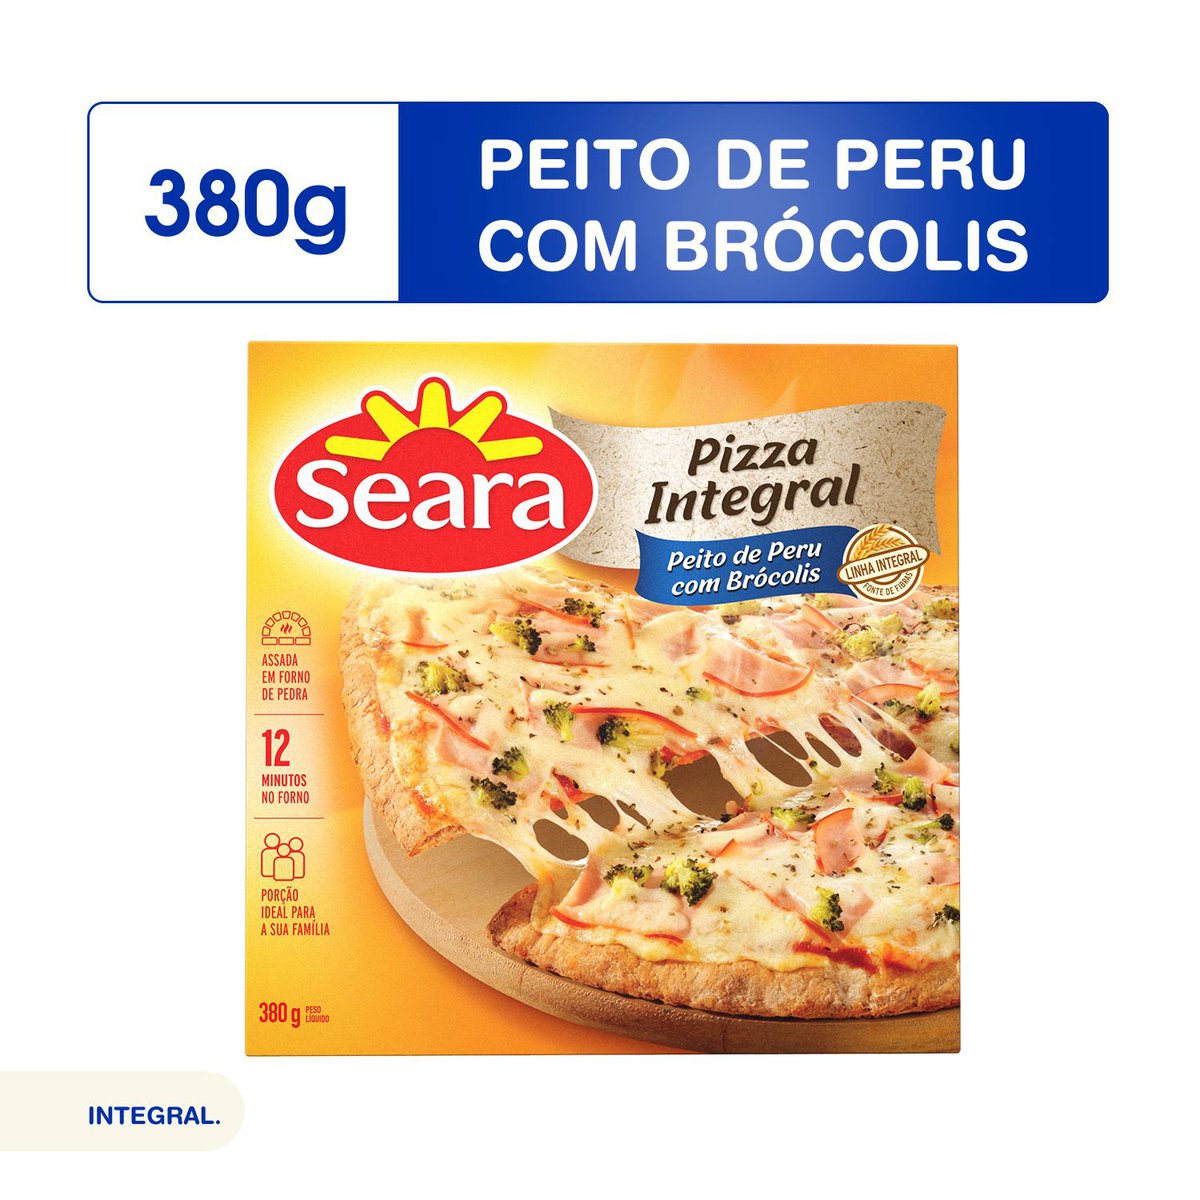 Peito de Peru - Picture of Super Pizza Pan - Vila Mariana, Sao